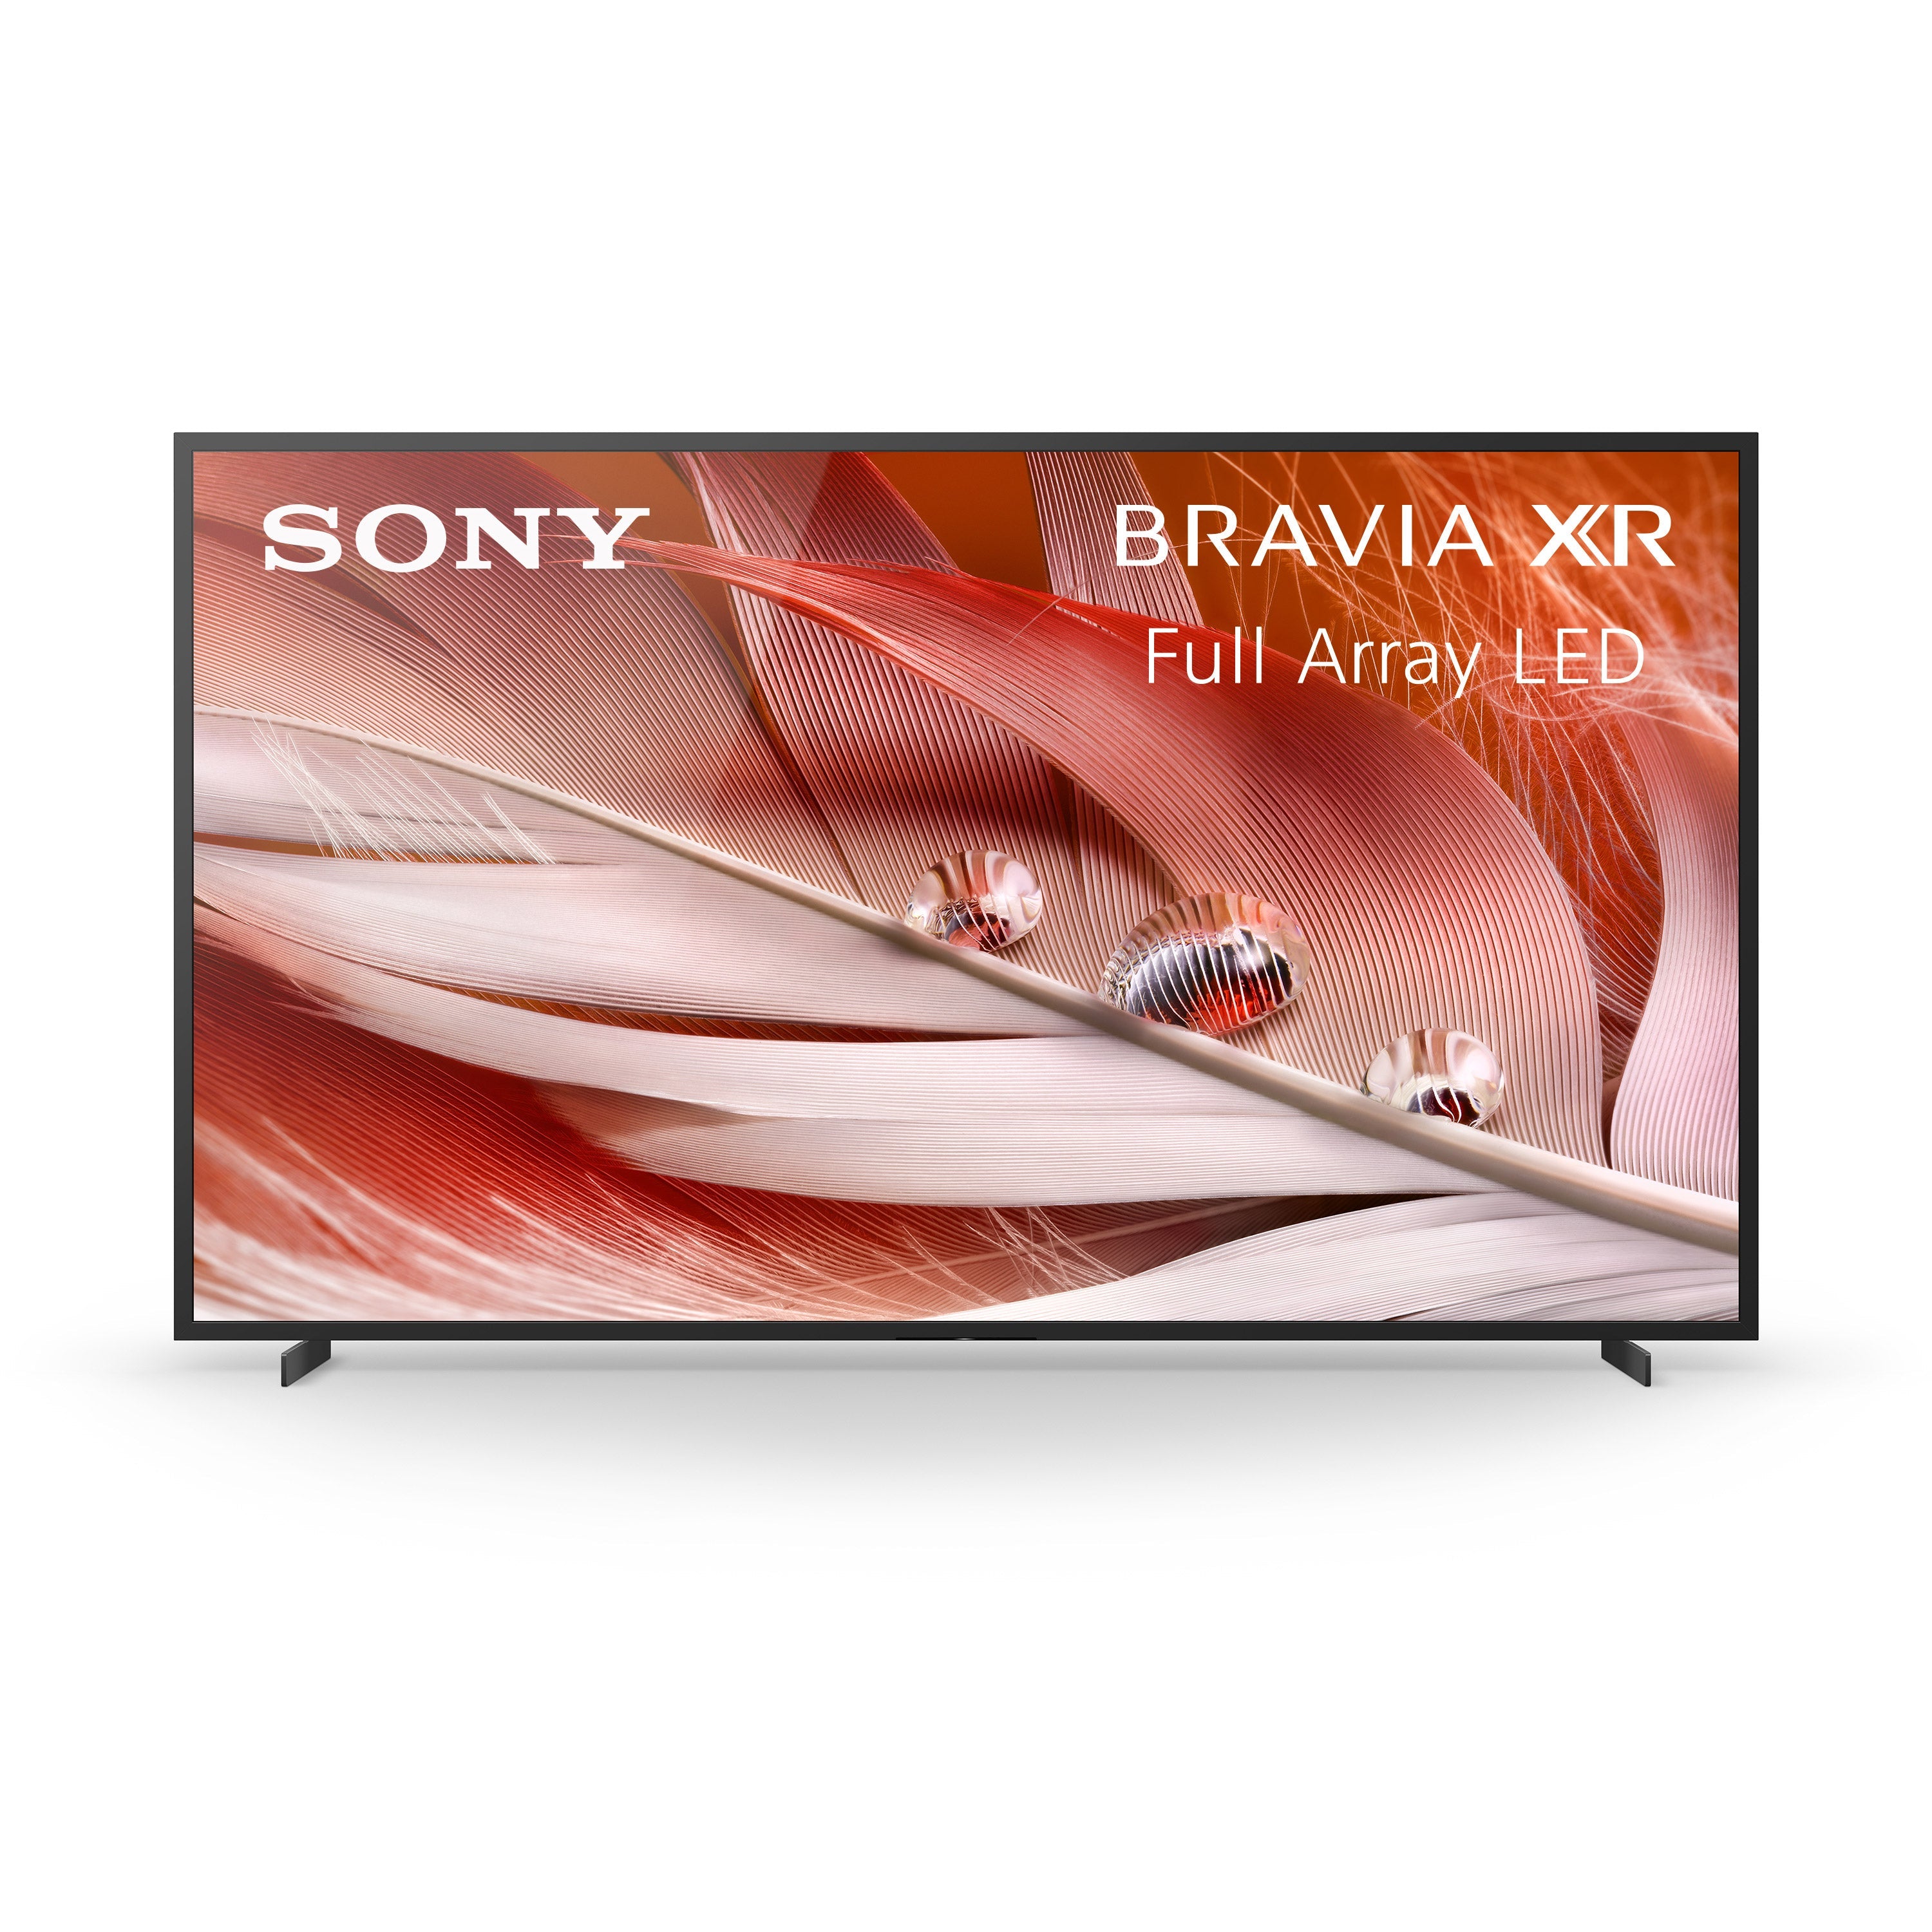 Sony X92 100" BRAVIA XR | Full Array LED | 4K Ultra HD | High Dynamic Range (HDR) | Smart TV (Google TV)